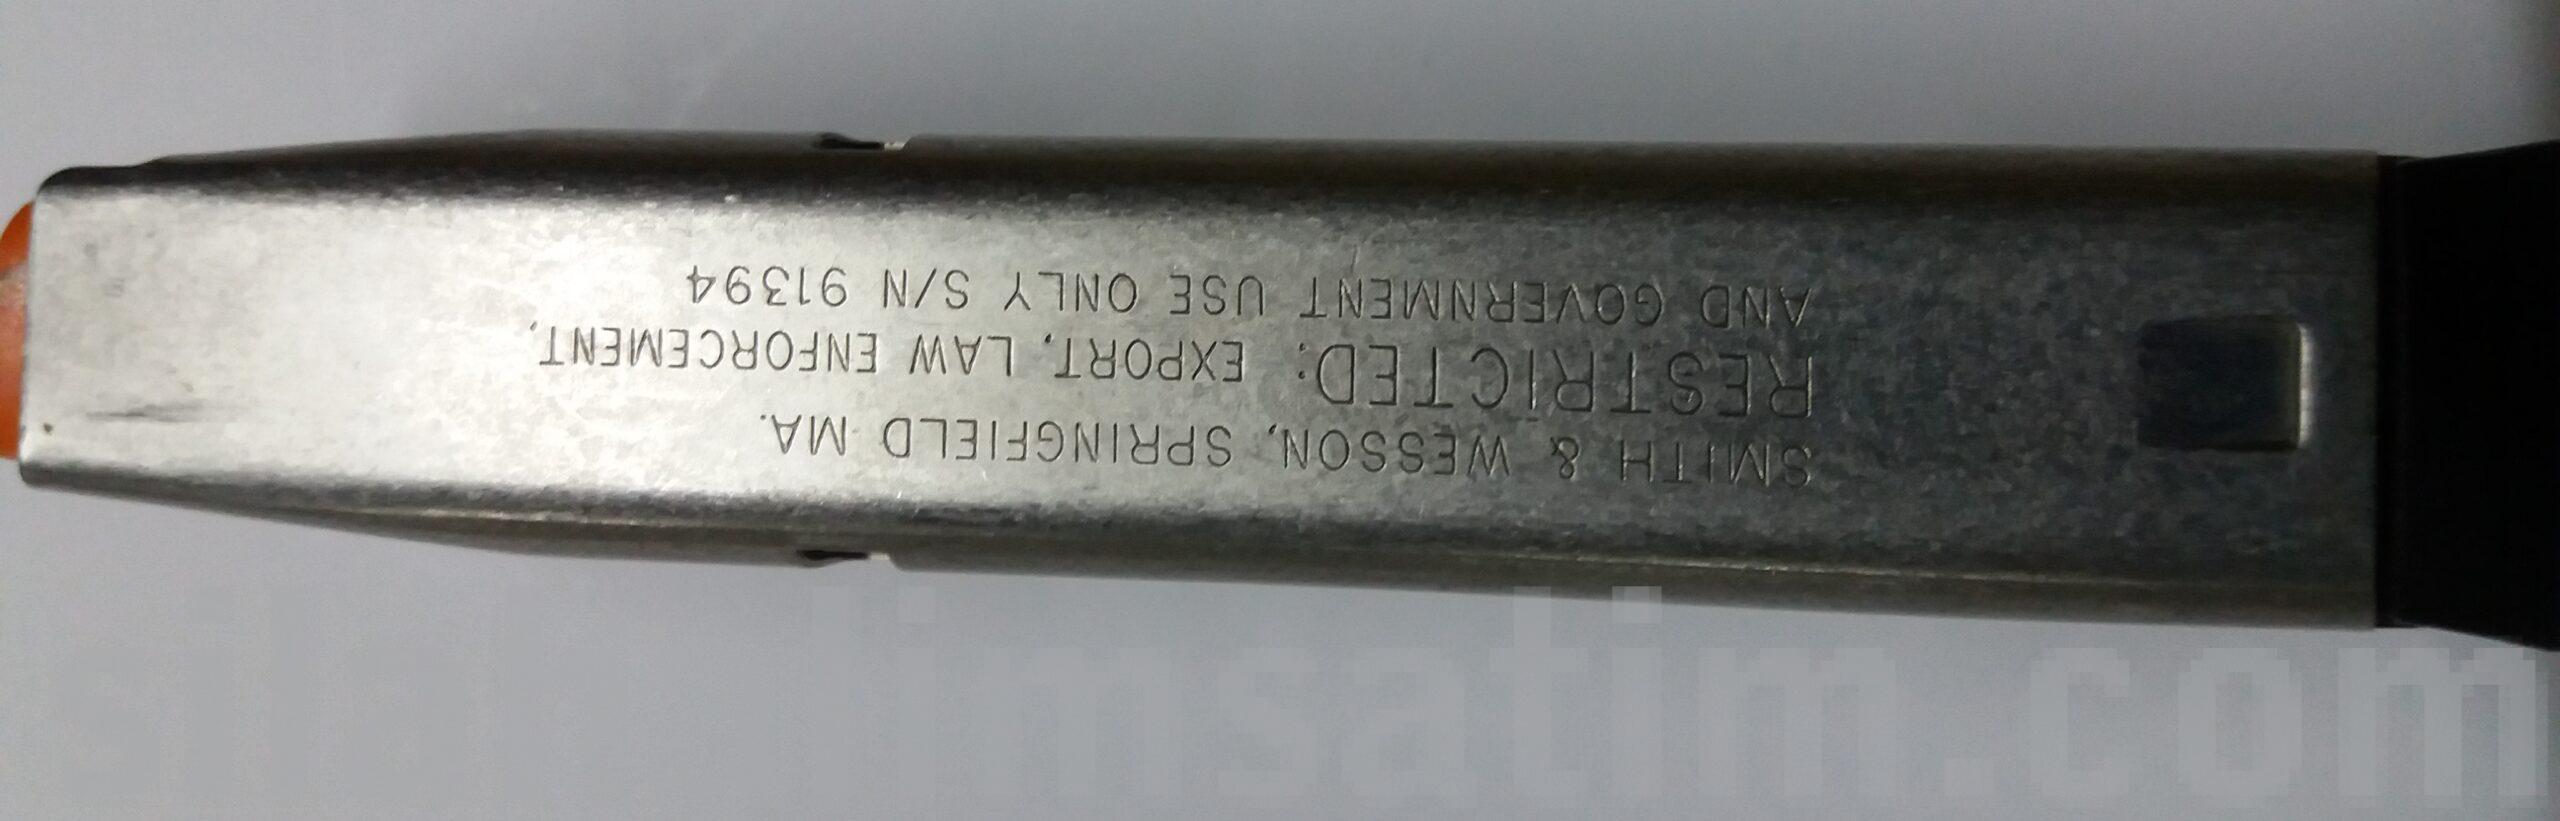 Smith&Wesson 5906 orjinal şarjör